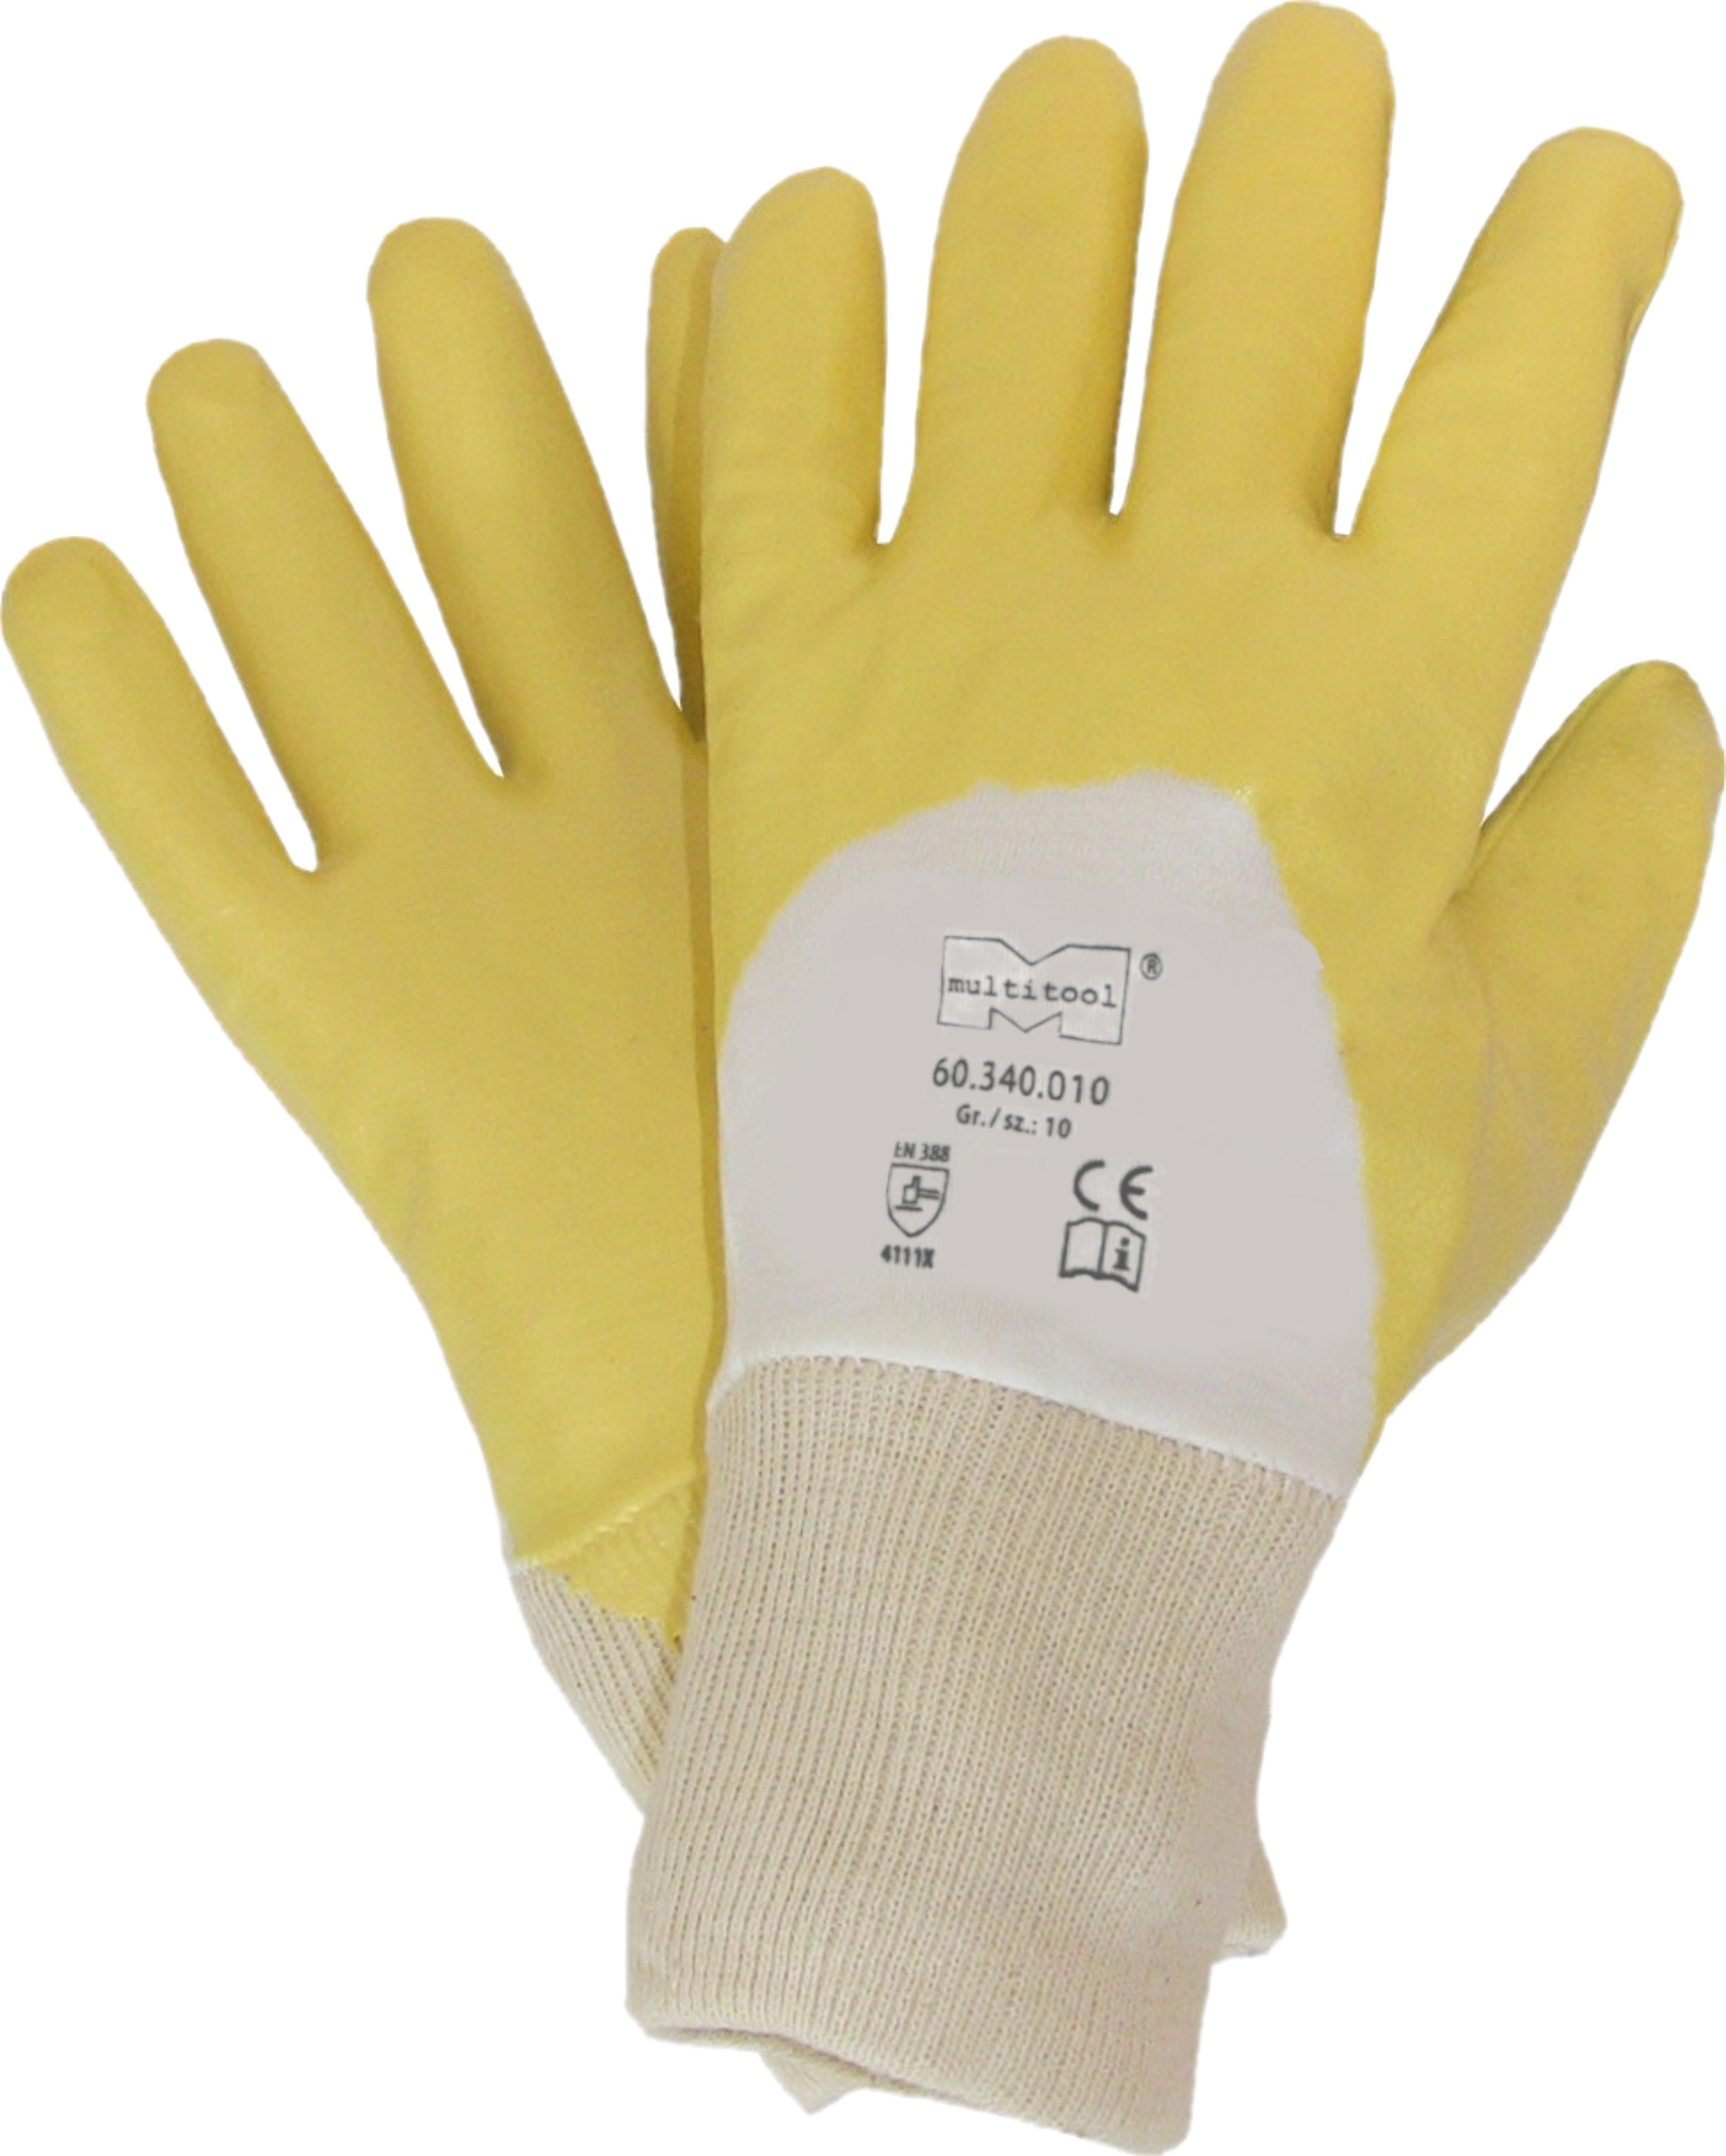 Nitrile Cotton Glove Premium